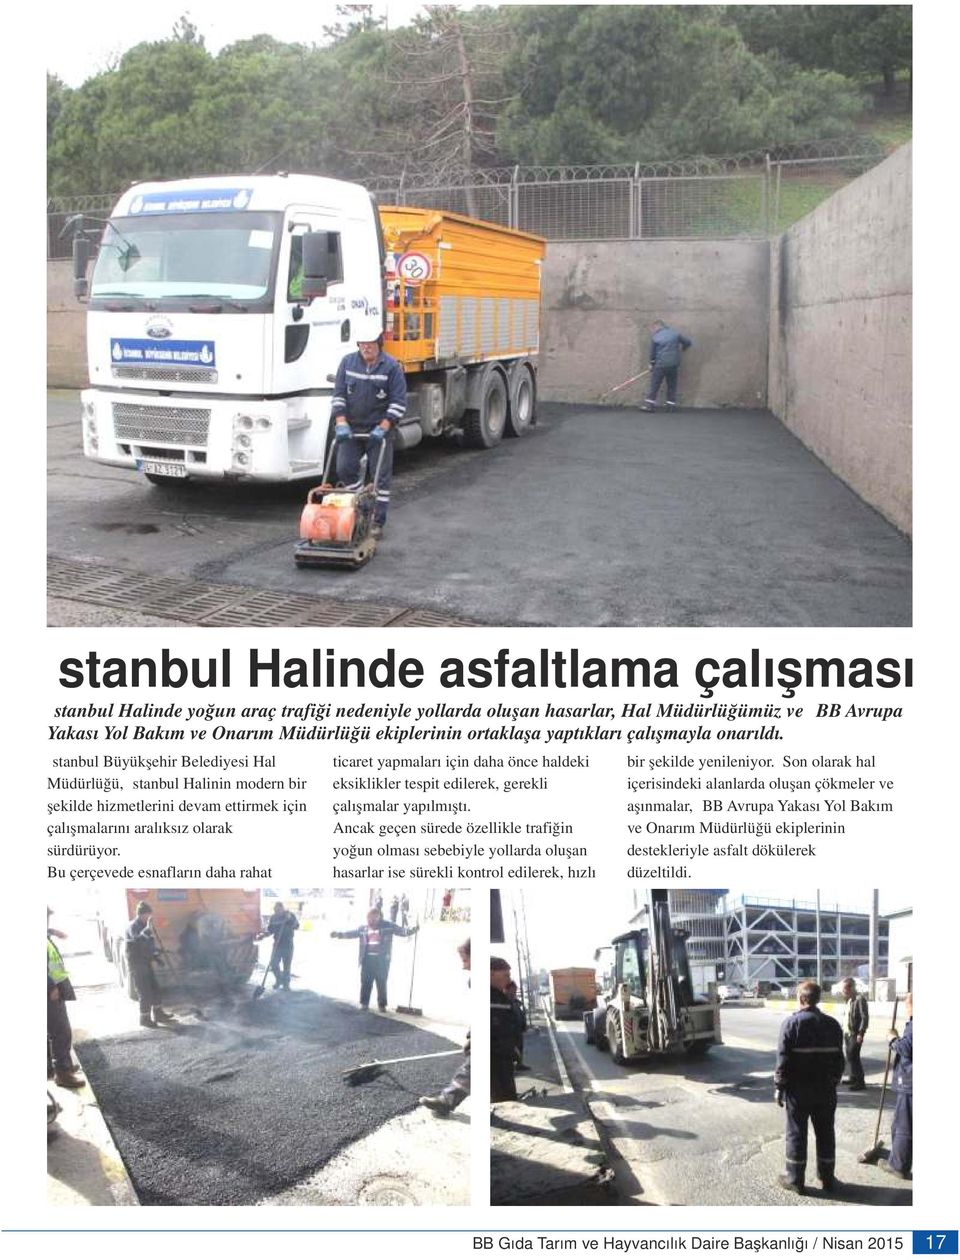 Son olarak hal Müdürlüğü, İstanbul Halinin modern bir eksiklikler tespit edilerek, gerekli içerisindeki alanlarda oluşan çökmeler ve şekilde hizmetlerini devam ettirmek için çalışmalar yapılmıştı.